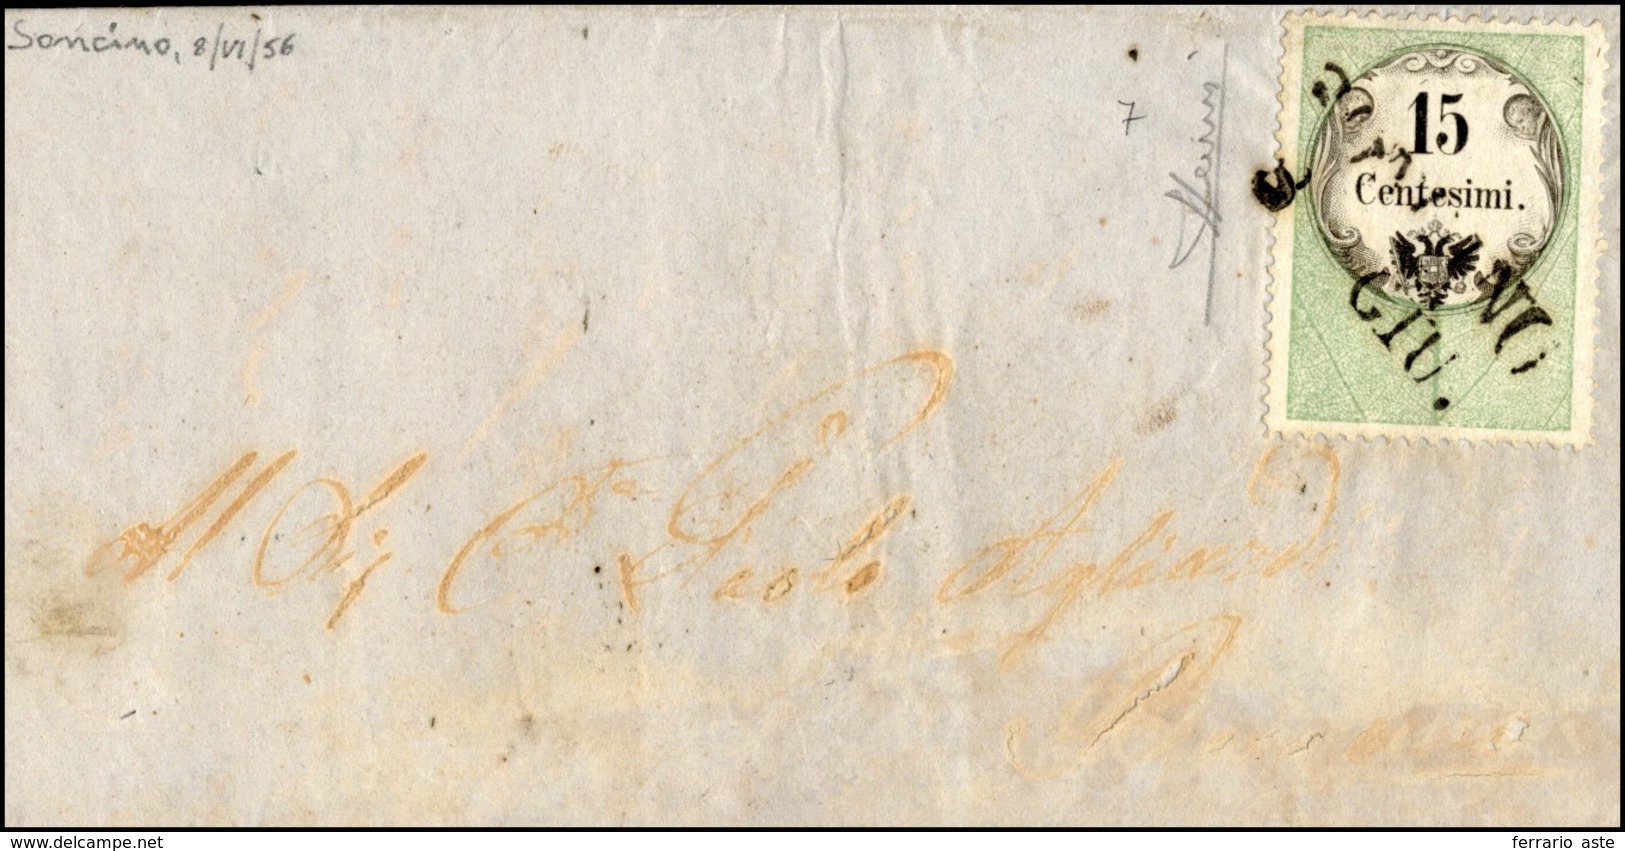 141 1856 - 15 Cent., Marca Da Bollo Calcografica (7), Perfetta, Su Lettera Da Soncino 8/6/1856 (punti 9)... - Lombardy-Venetia